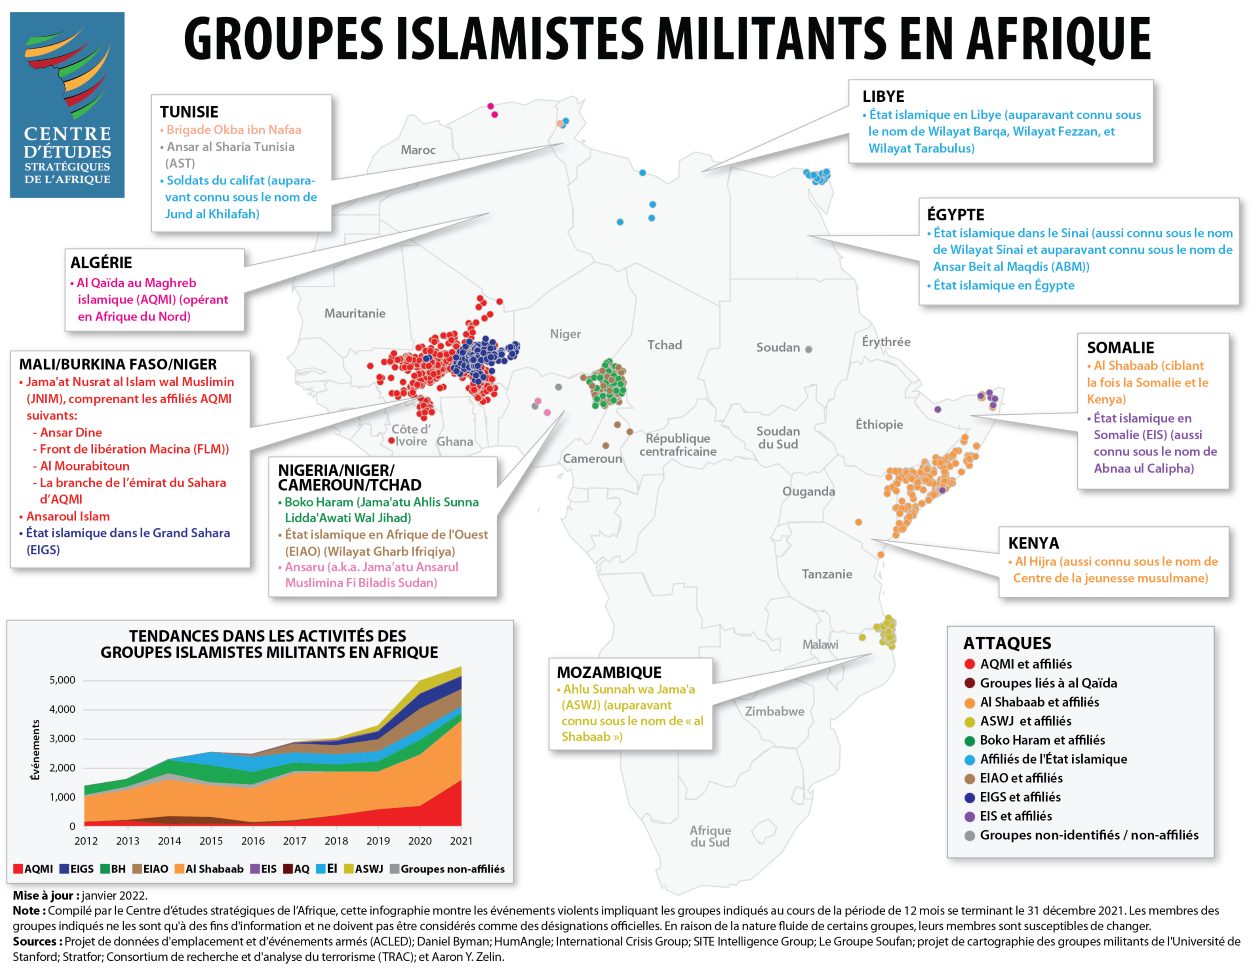 Carte - Groupes islamistes militants en Afrique en 2021